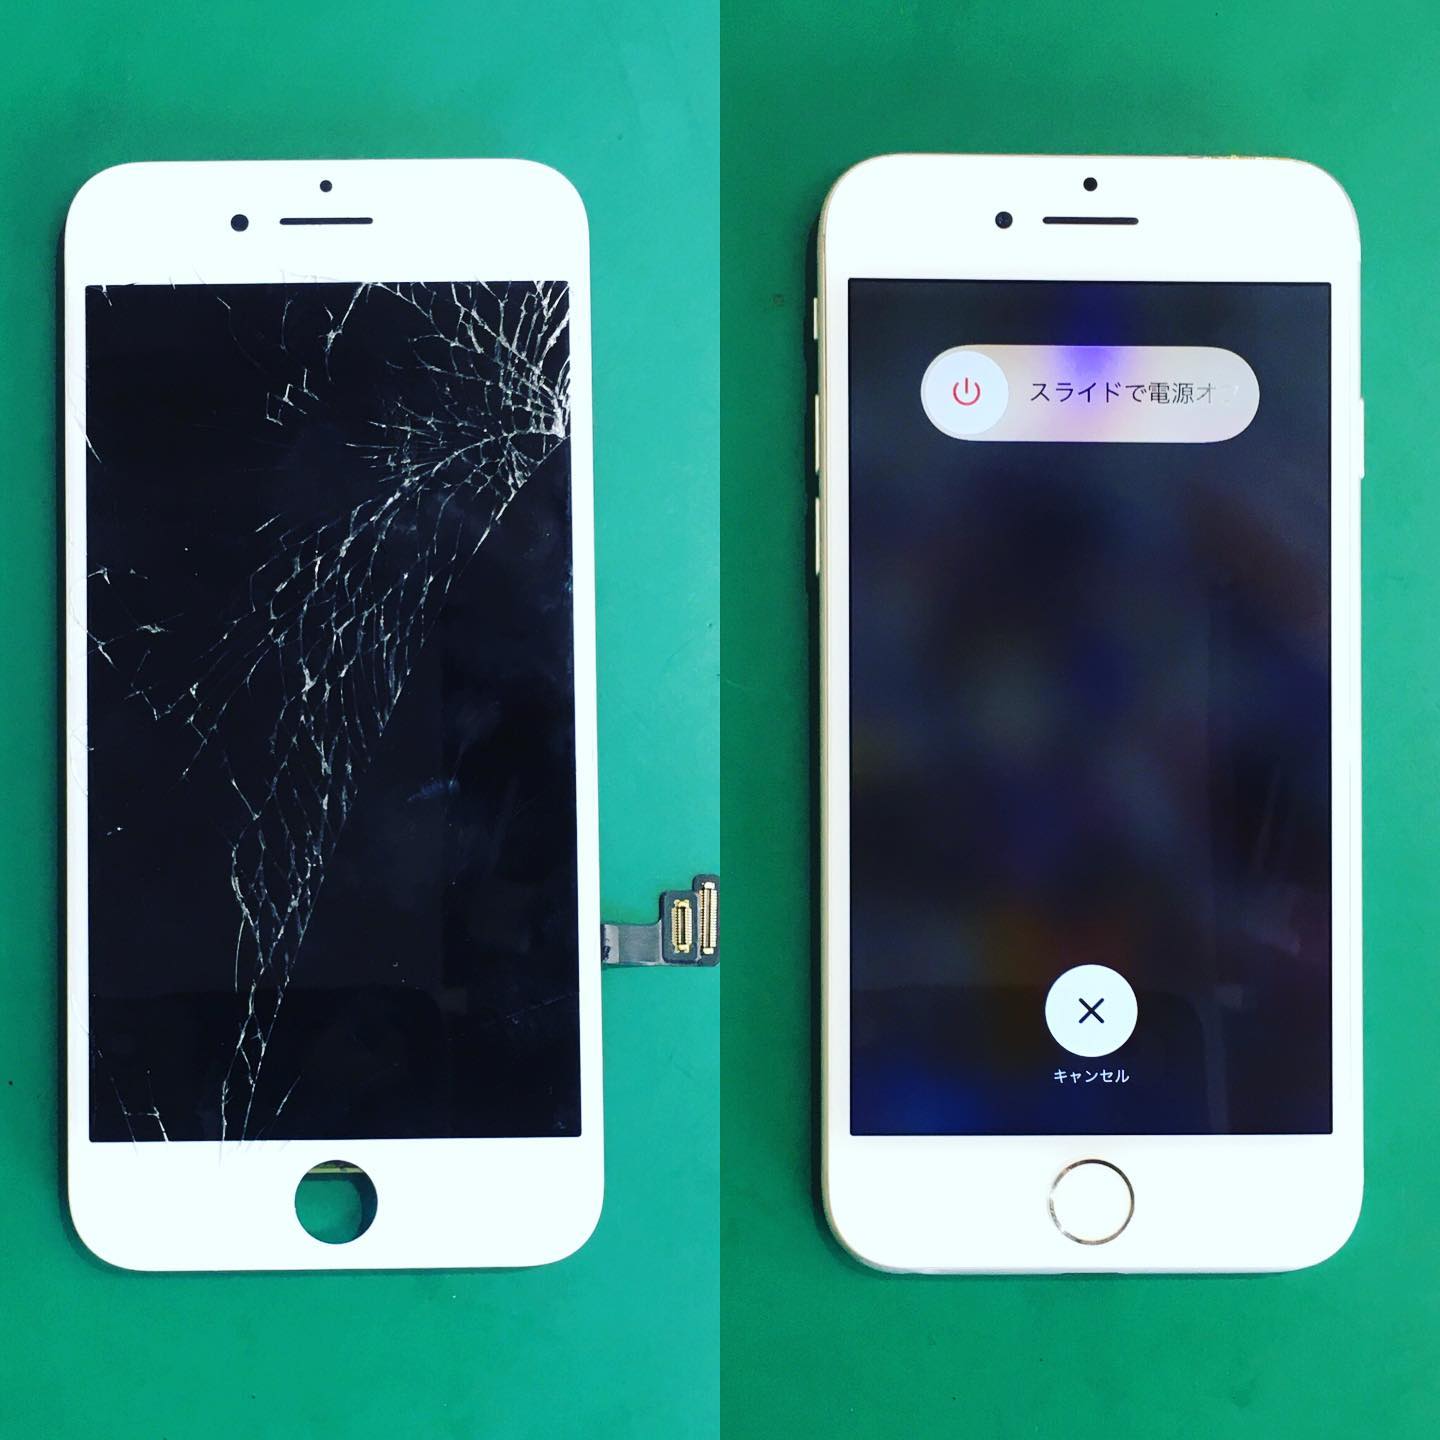 あま市のO様がiPhone7の液晶修理でご来店📲

引きずったように画面が割れていました🥺
液晶漏れも多数ありましたが、30分程でスムーズにお返しができました🥰
今後ともよろしくお願いします⭐️

お問い合わせ▶️0120-14-3956

#名古屋 #栄 #iPhone 修理#最速修理 #即日修理 #データそのまま #液晶修理